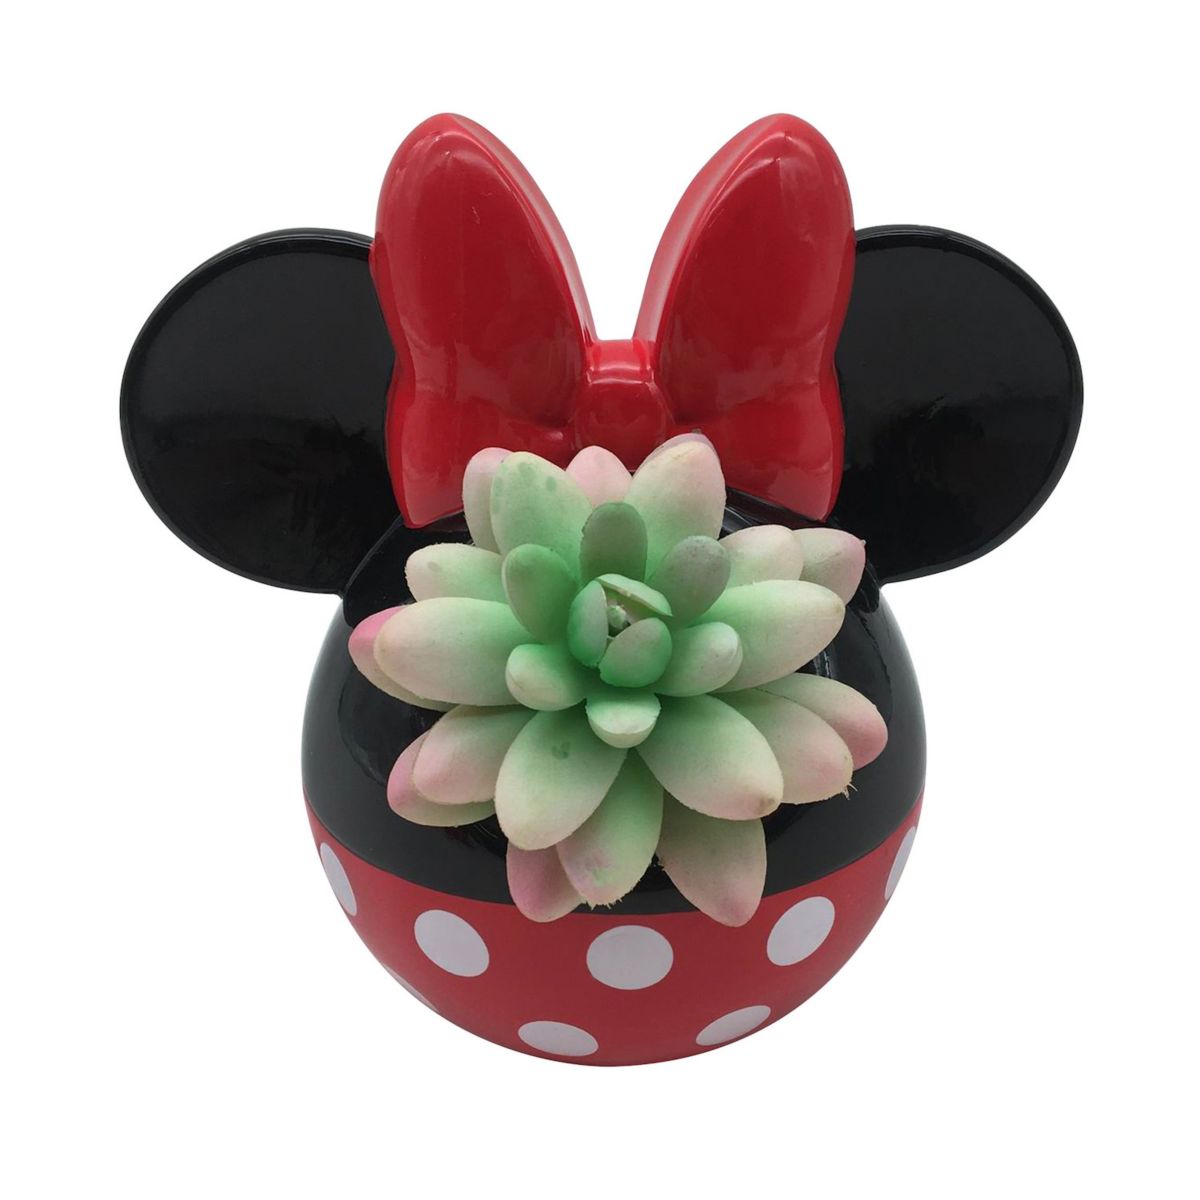 Disney Minnie Mouse Mini Planter Disney